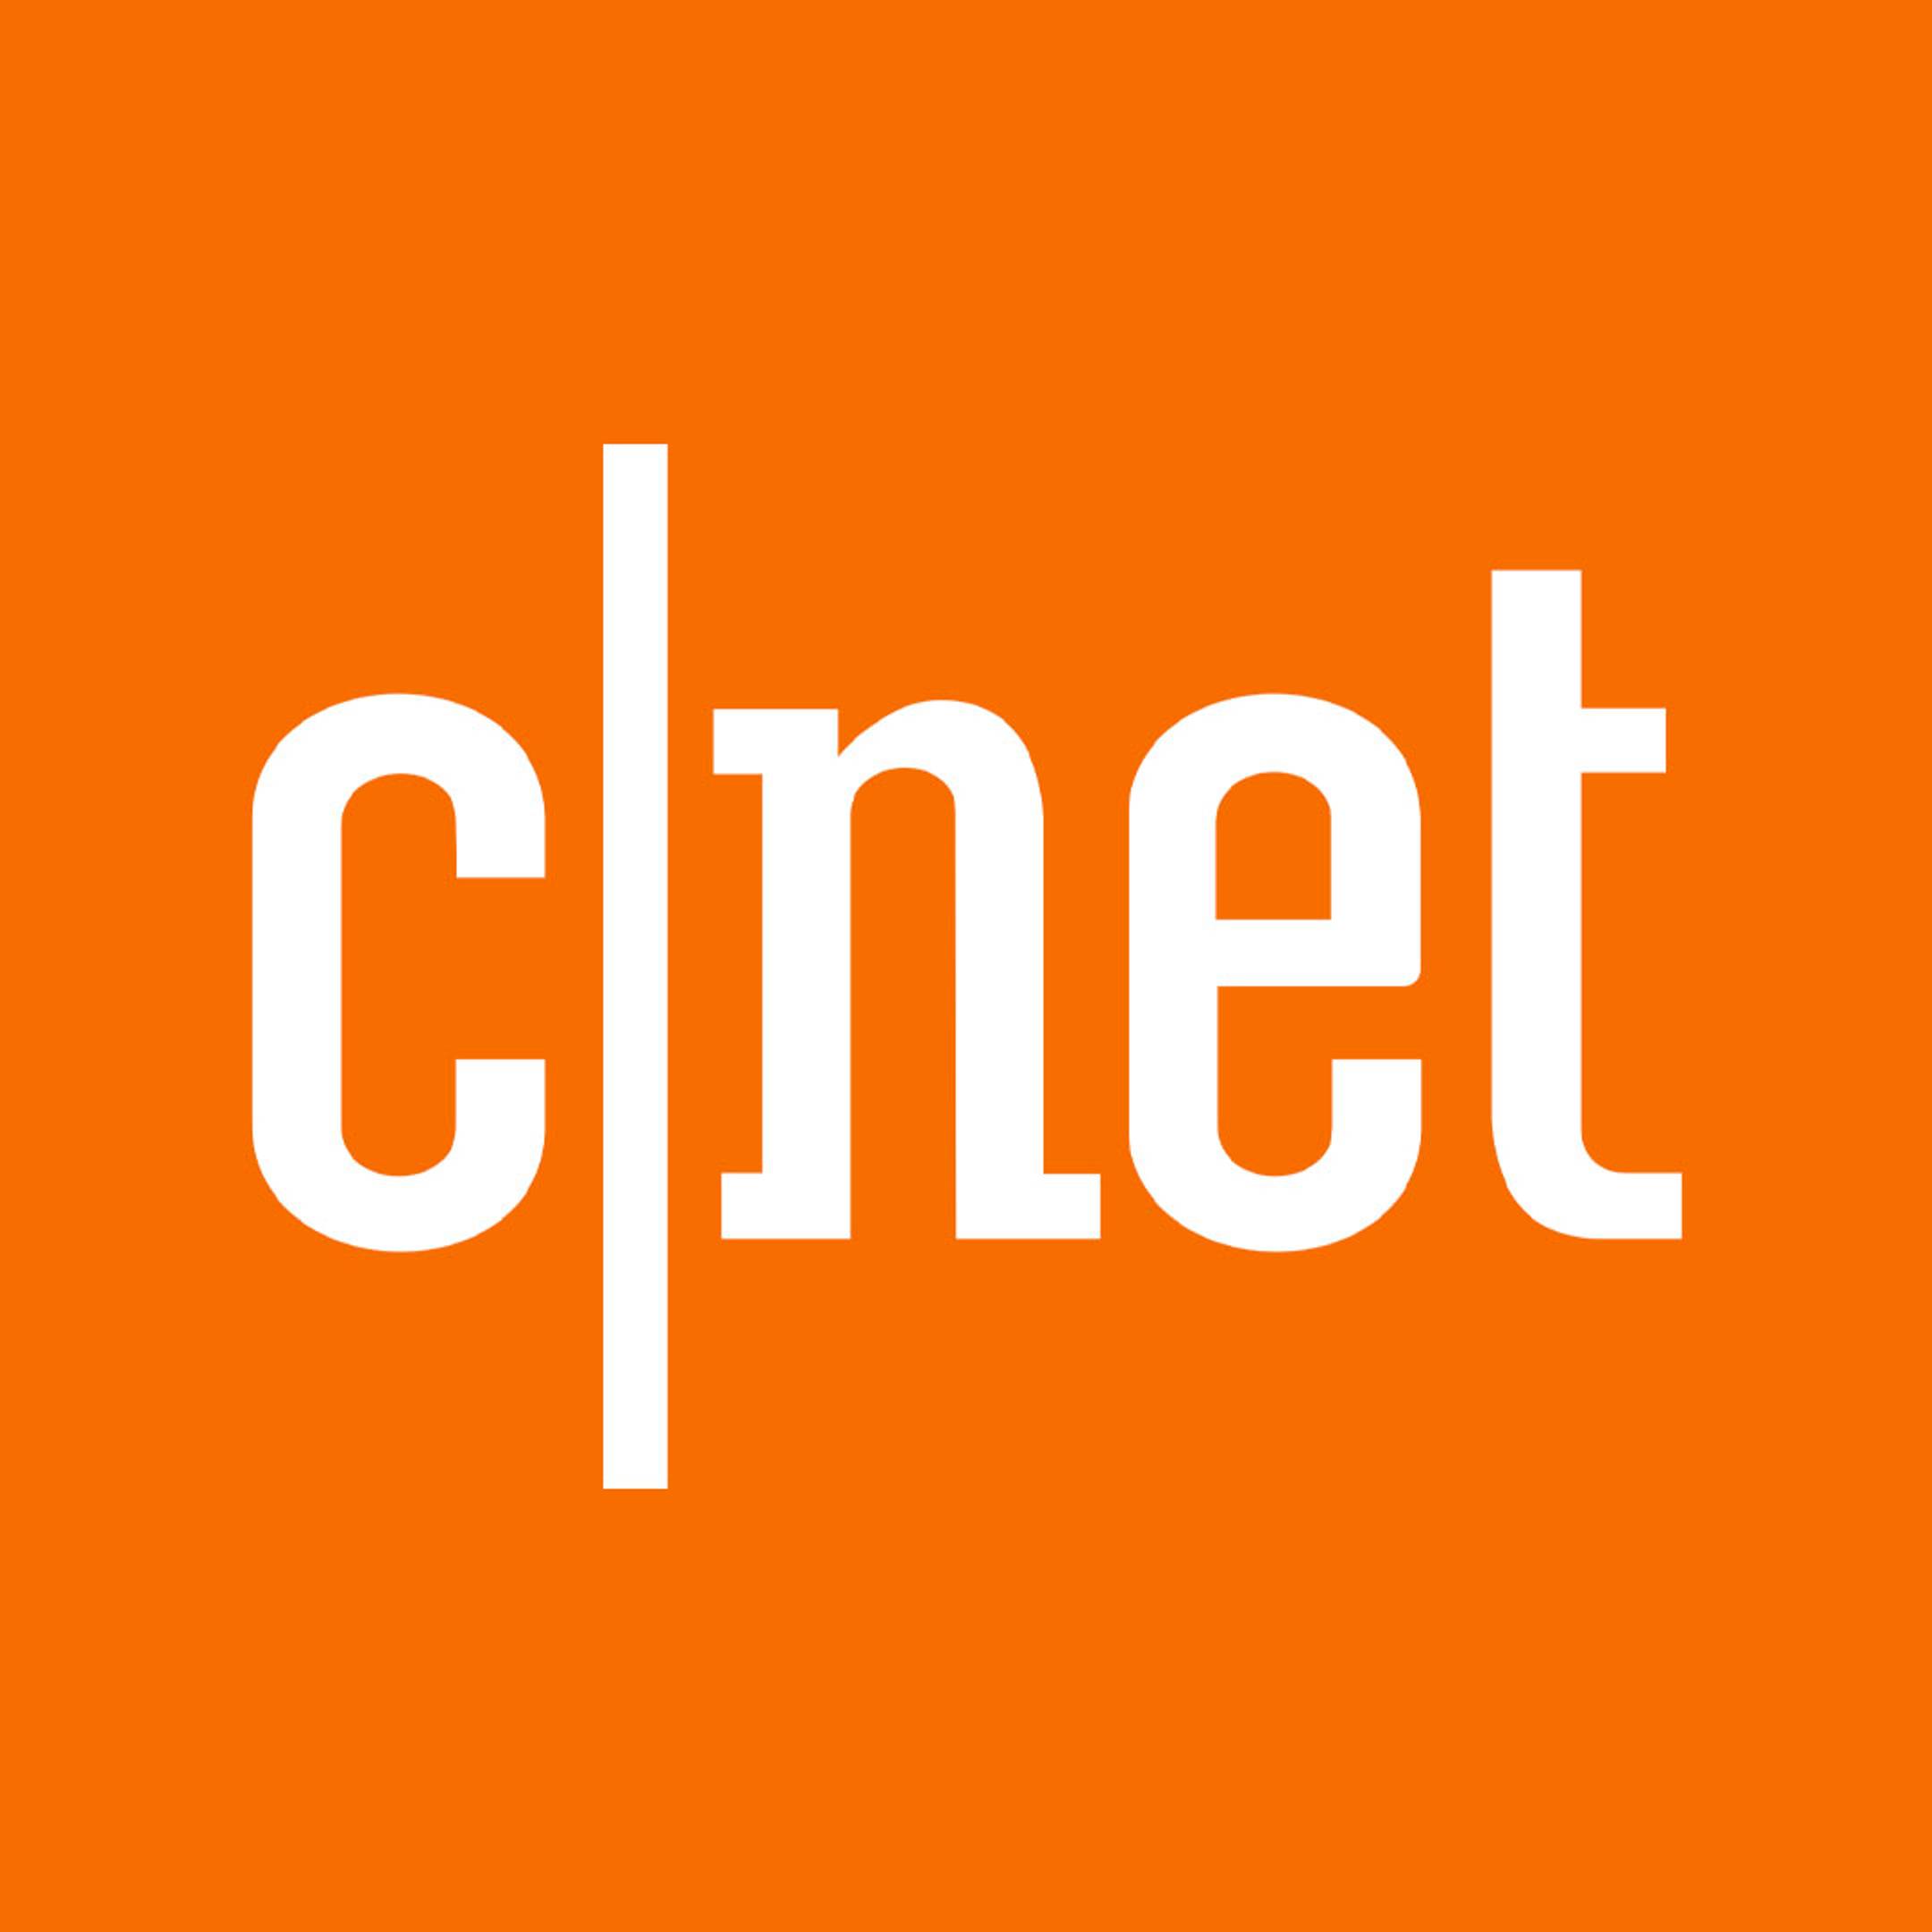 CNet logo on orange background 